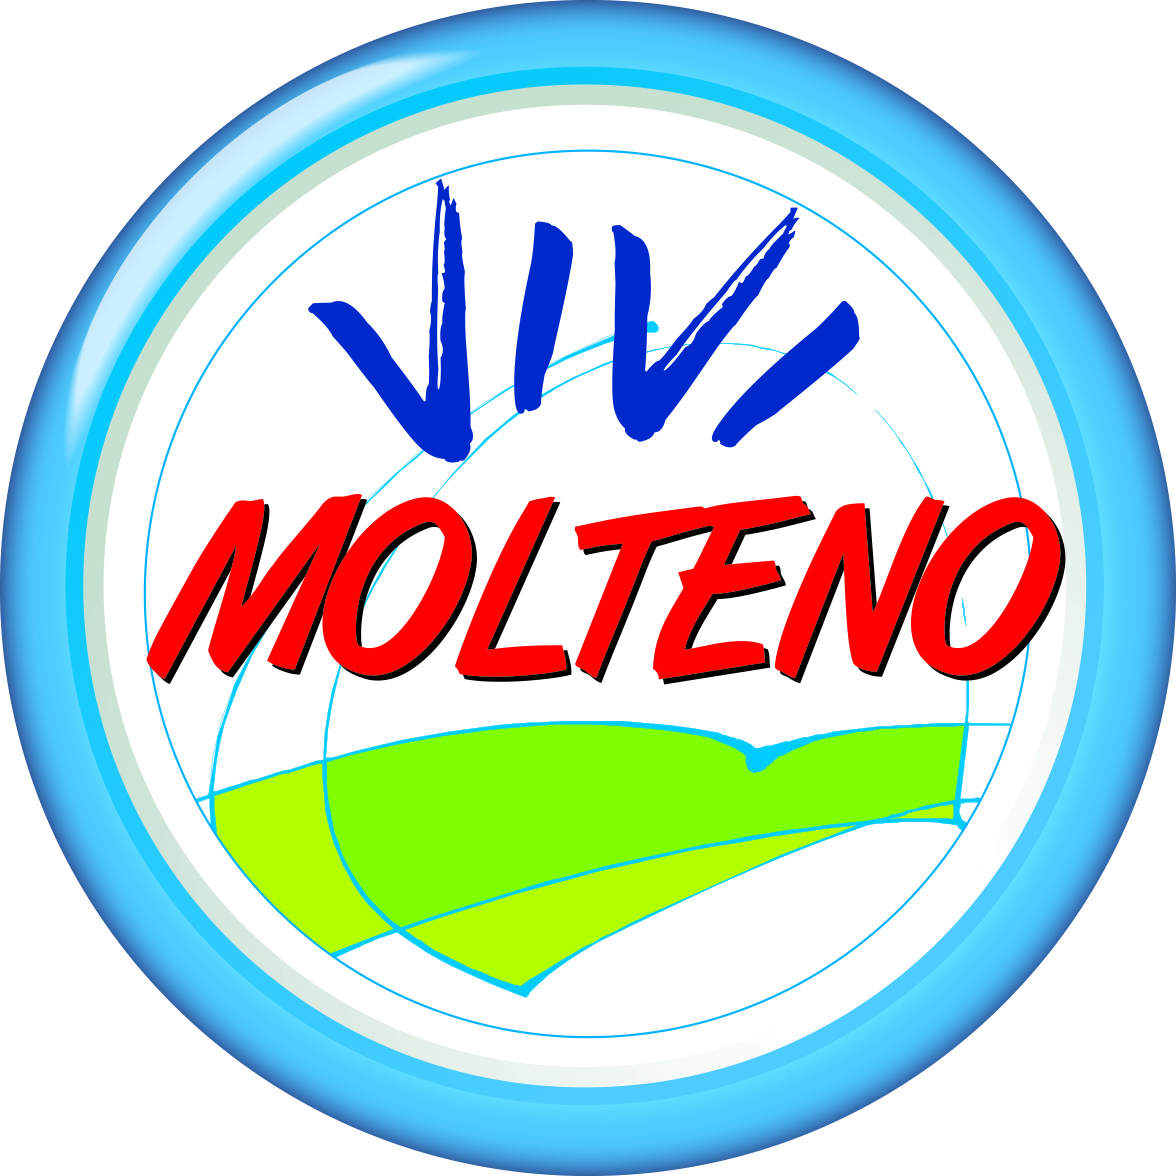 Molteno_VM_13_logo.jpg (1.18 MB)